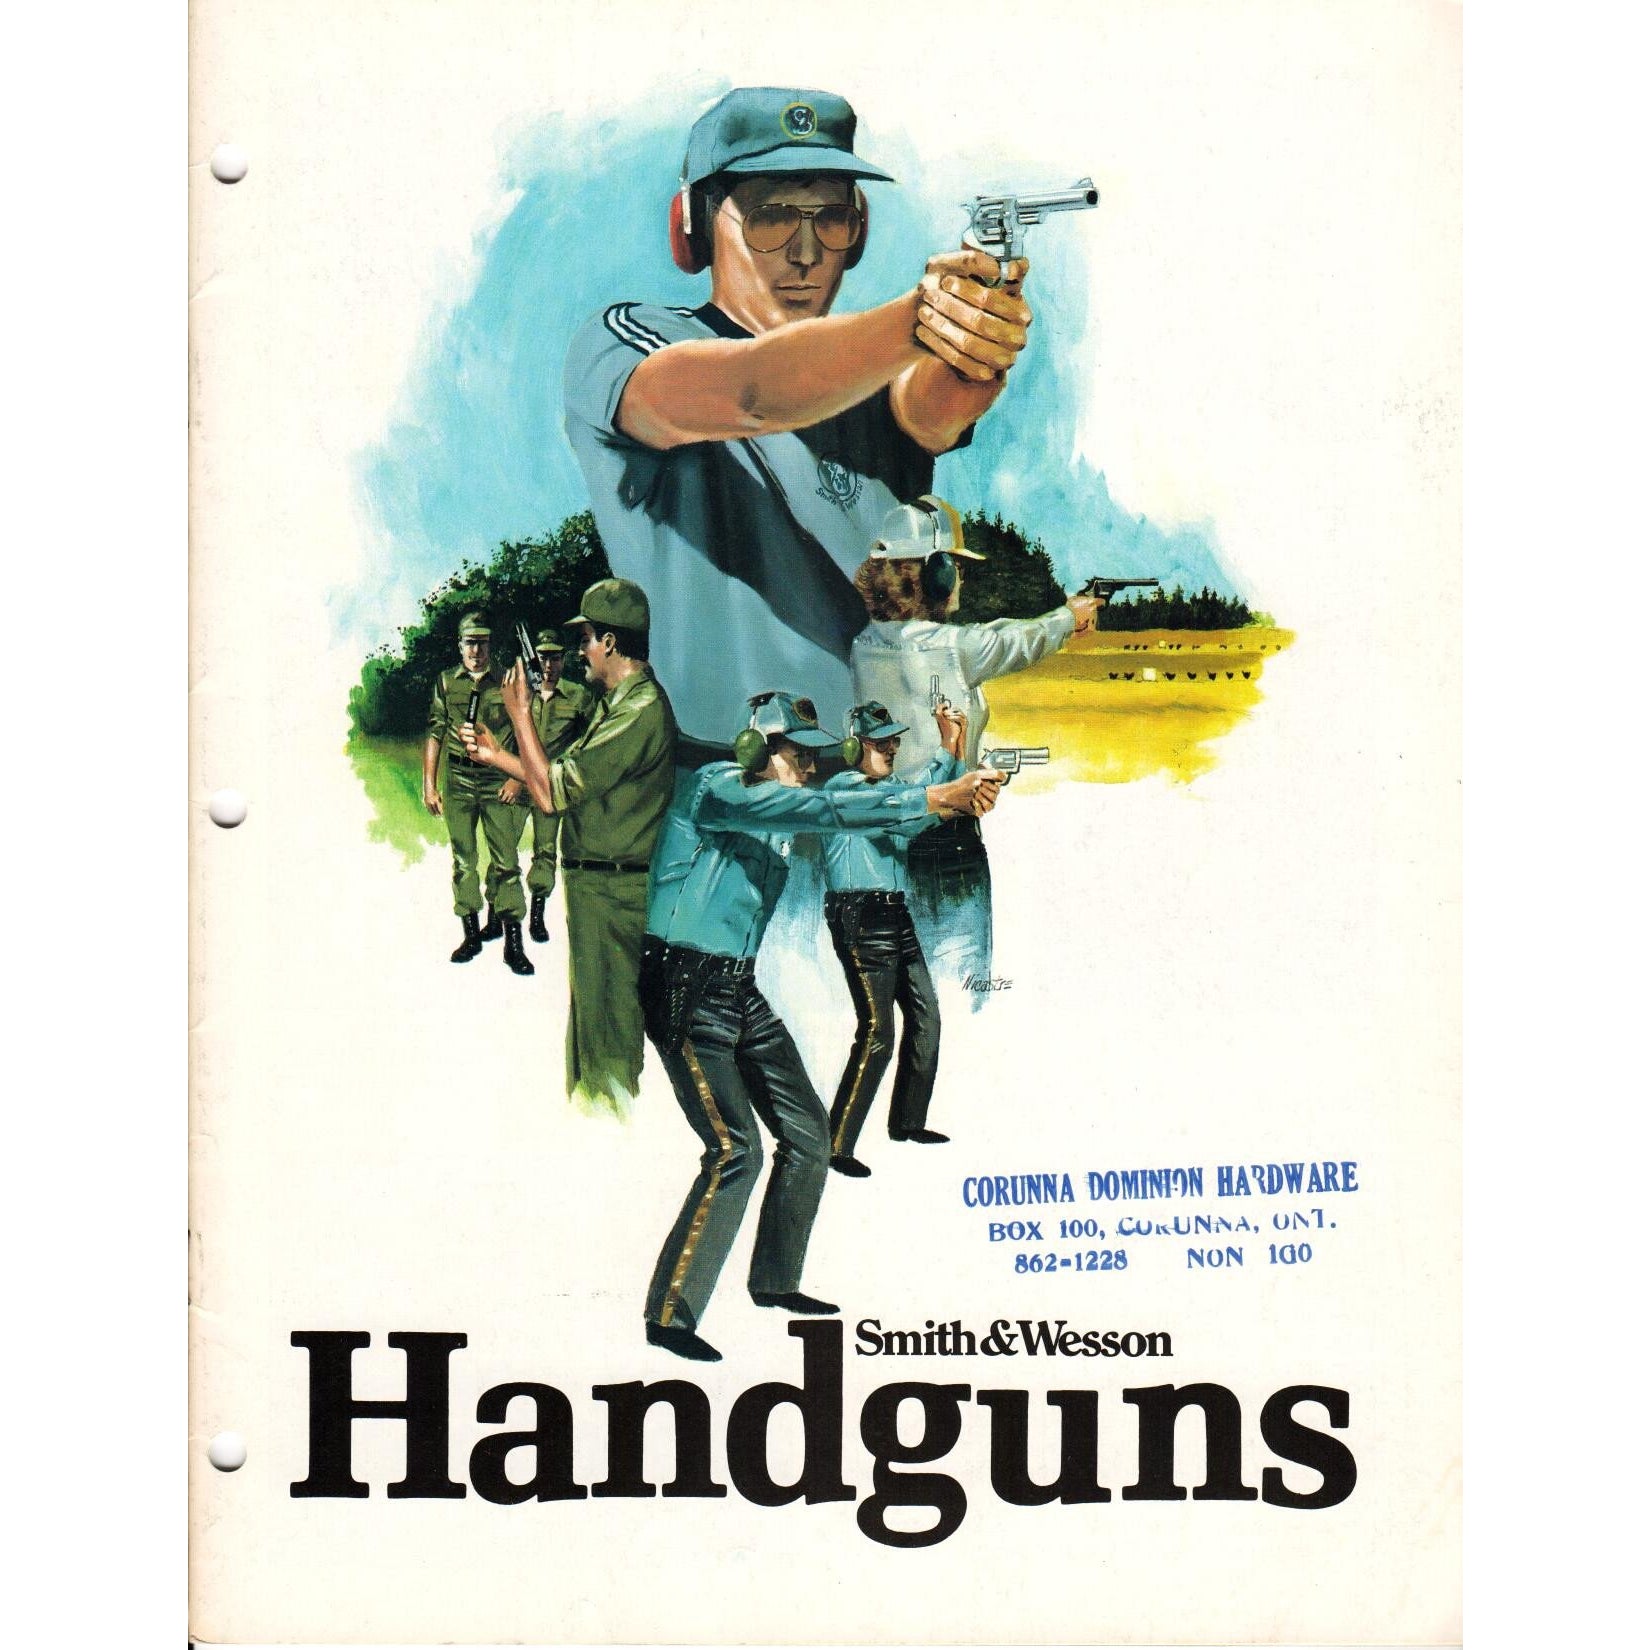 Smith & Wesson Handguns (Rev. 4/83)